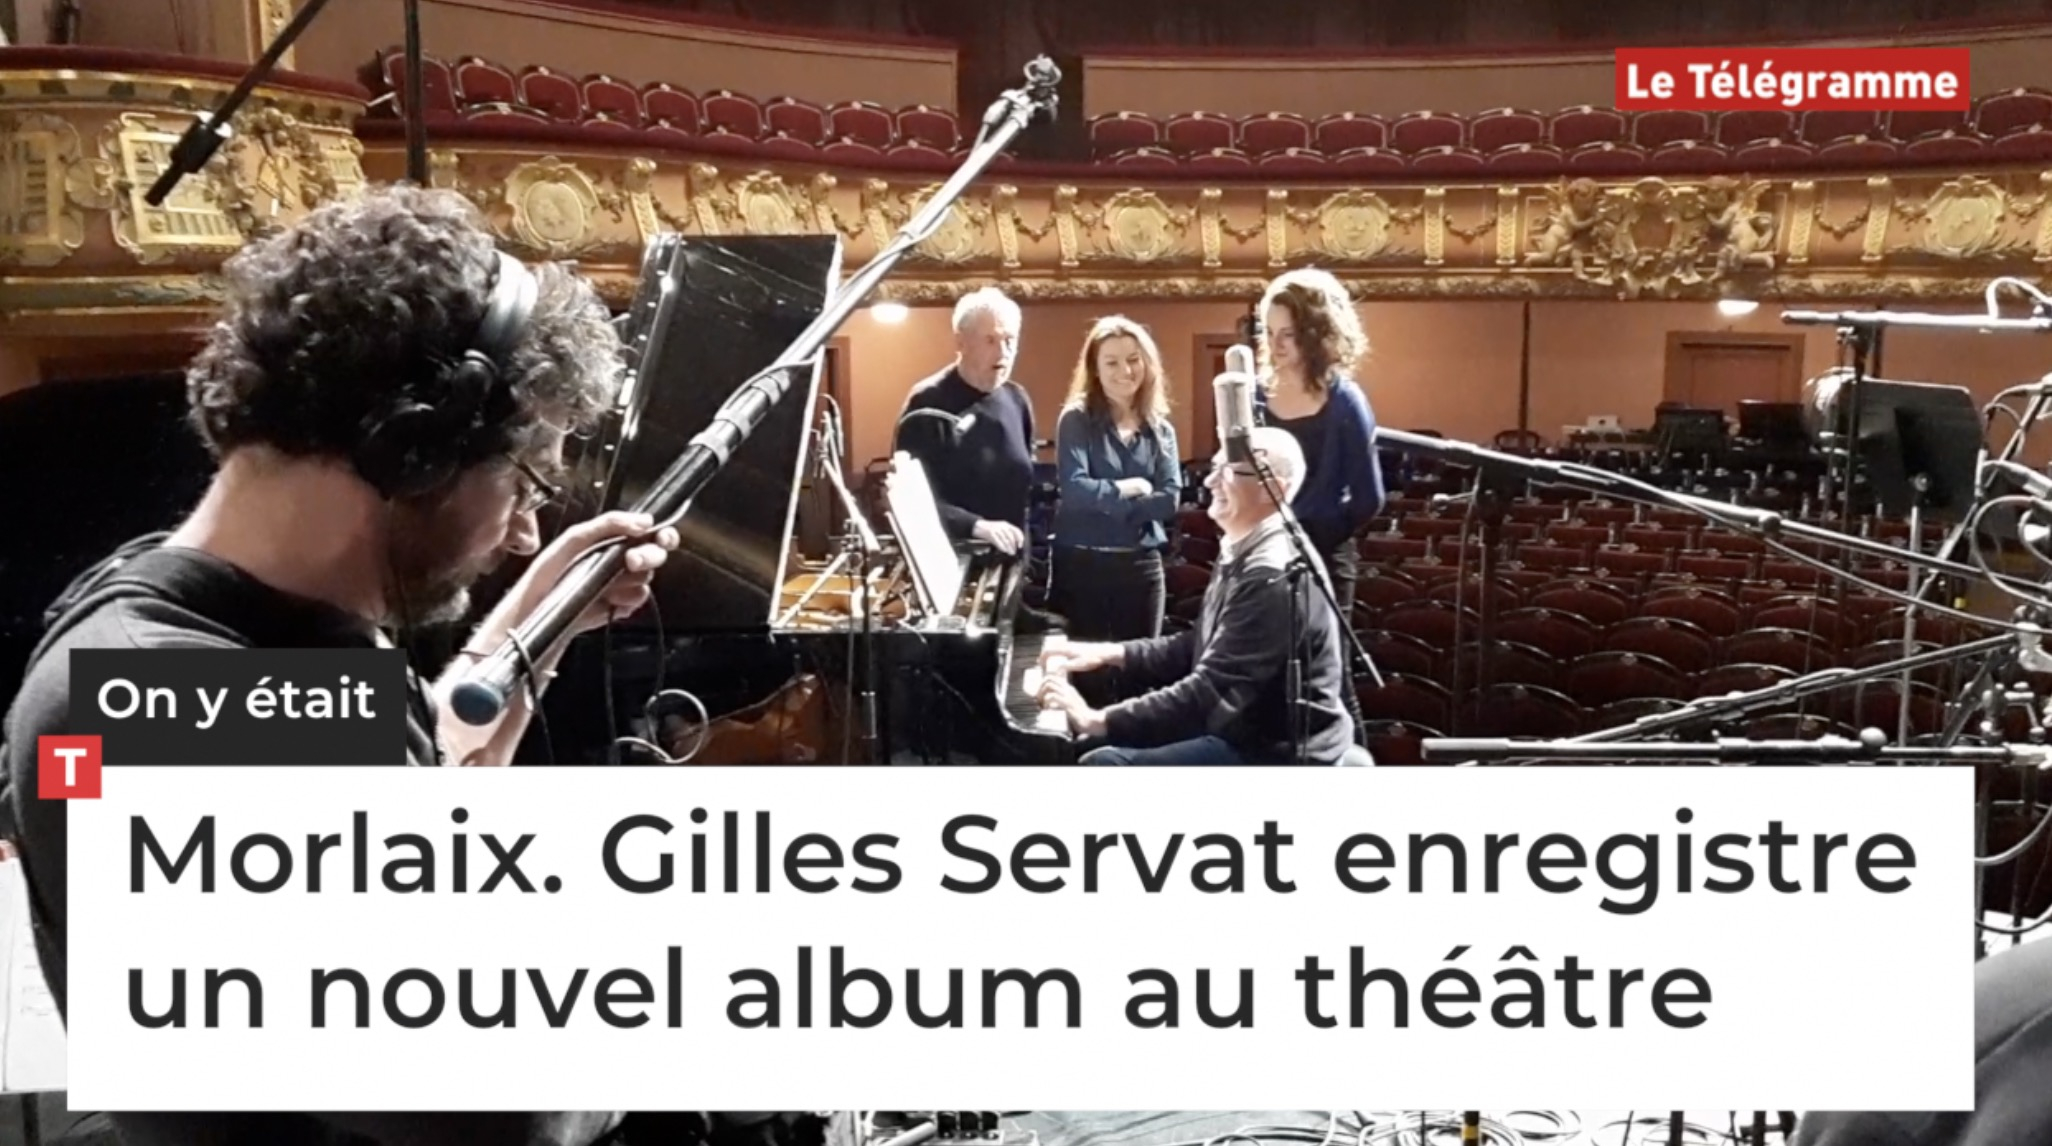 Morlaix. Gilles Servat enregistre un nouvel album au théâtre (Le Télégramme)